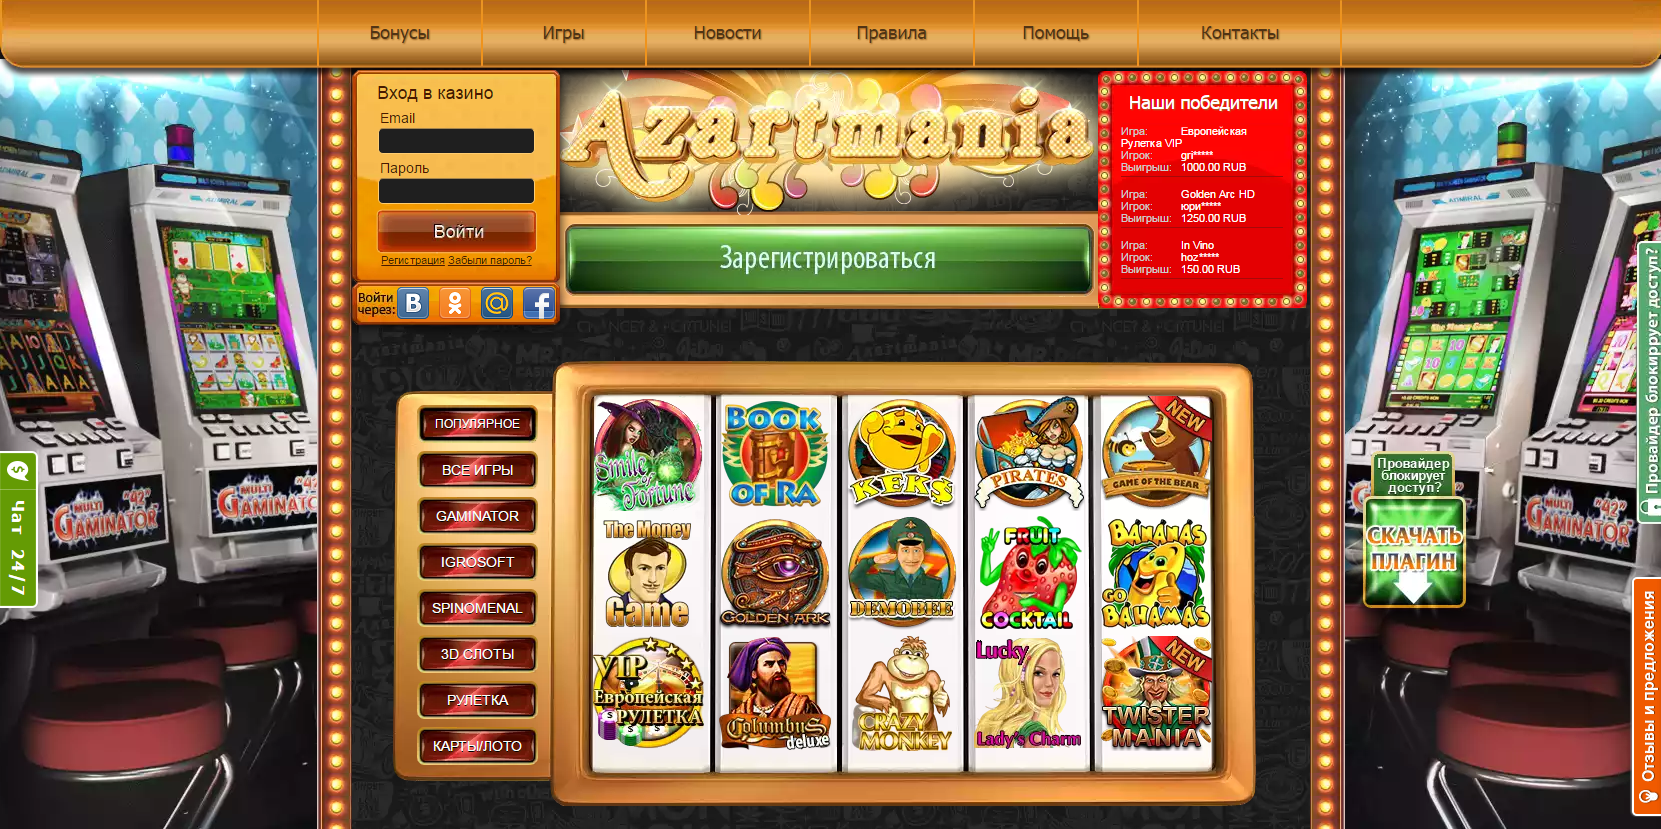 казино azartmania вход мобильная версия